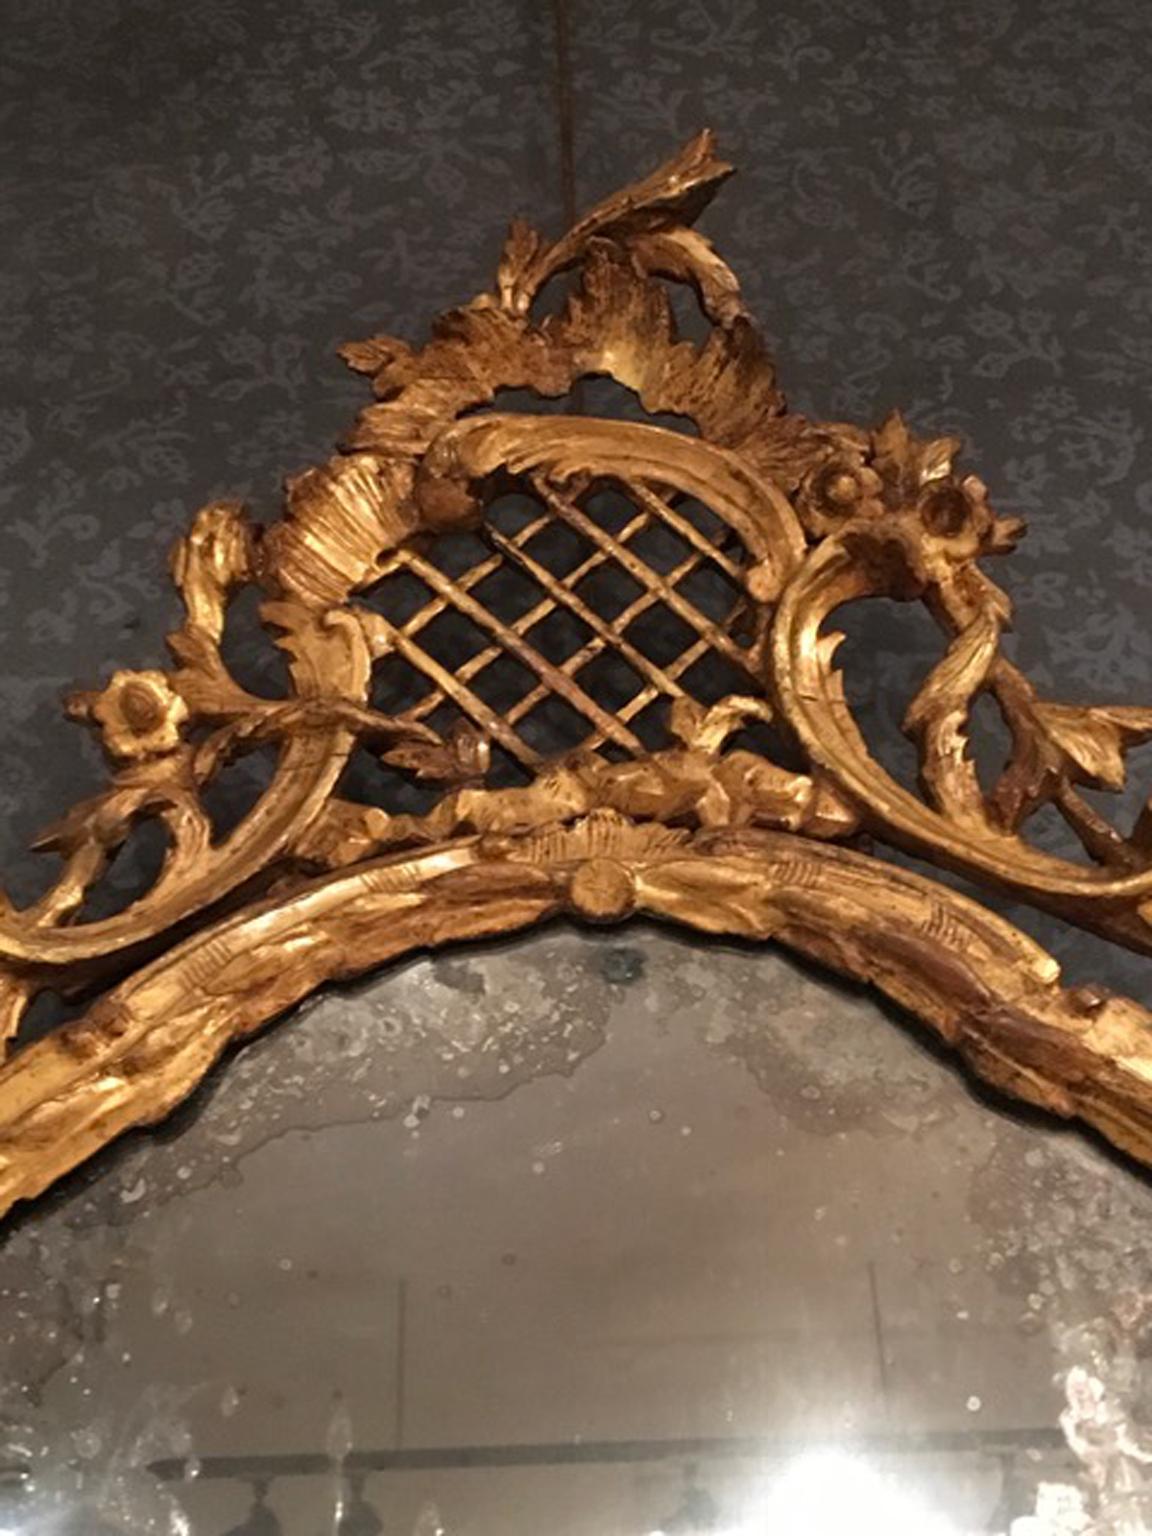 Important et beau miroir baroque italien, fabriqué à la main en bois doré avec de riches détails sculptés. Le miroir au mercure est en très bon état. La provenance est Venise (Venezia), Italie.
Une pièce importante parfaite aussi sous une consolle